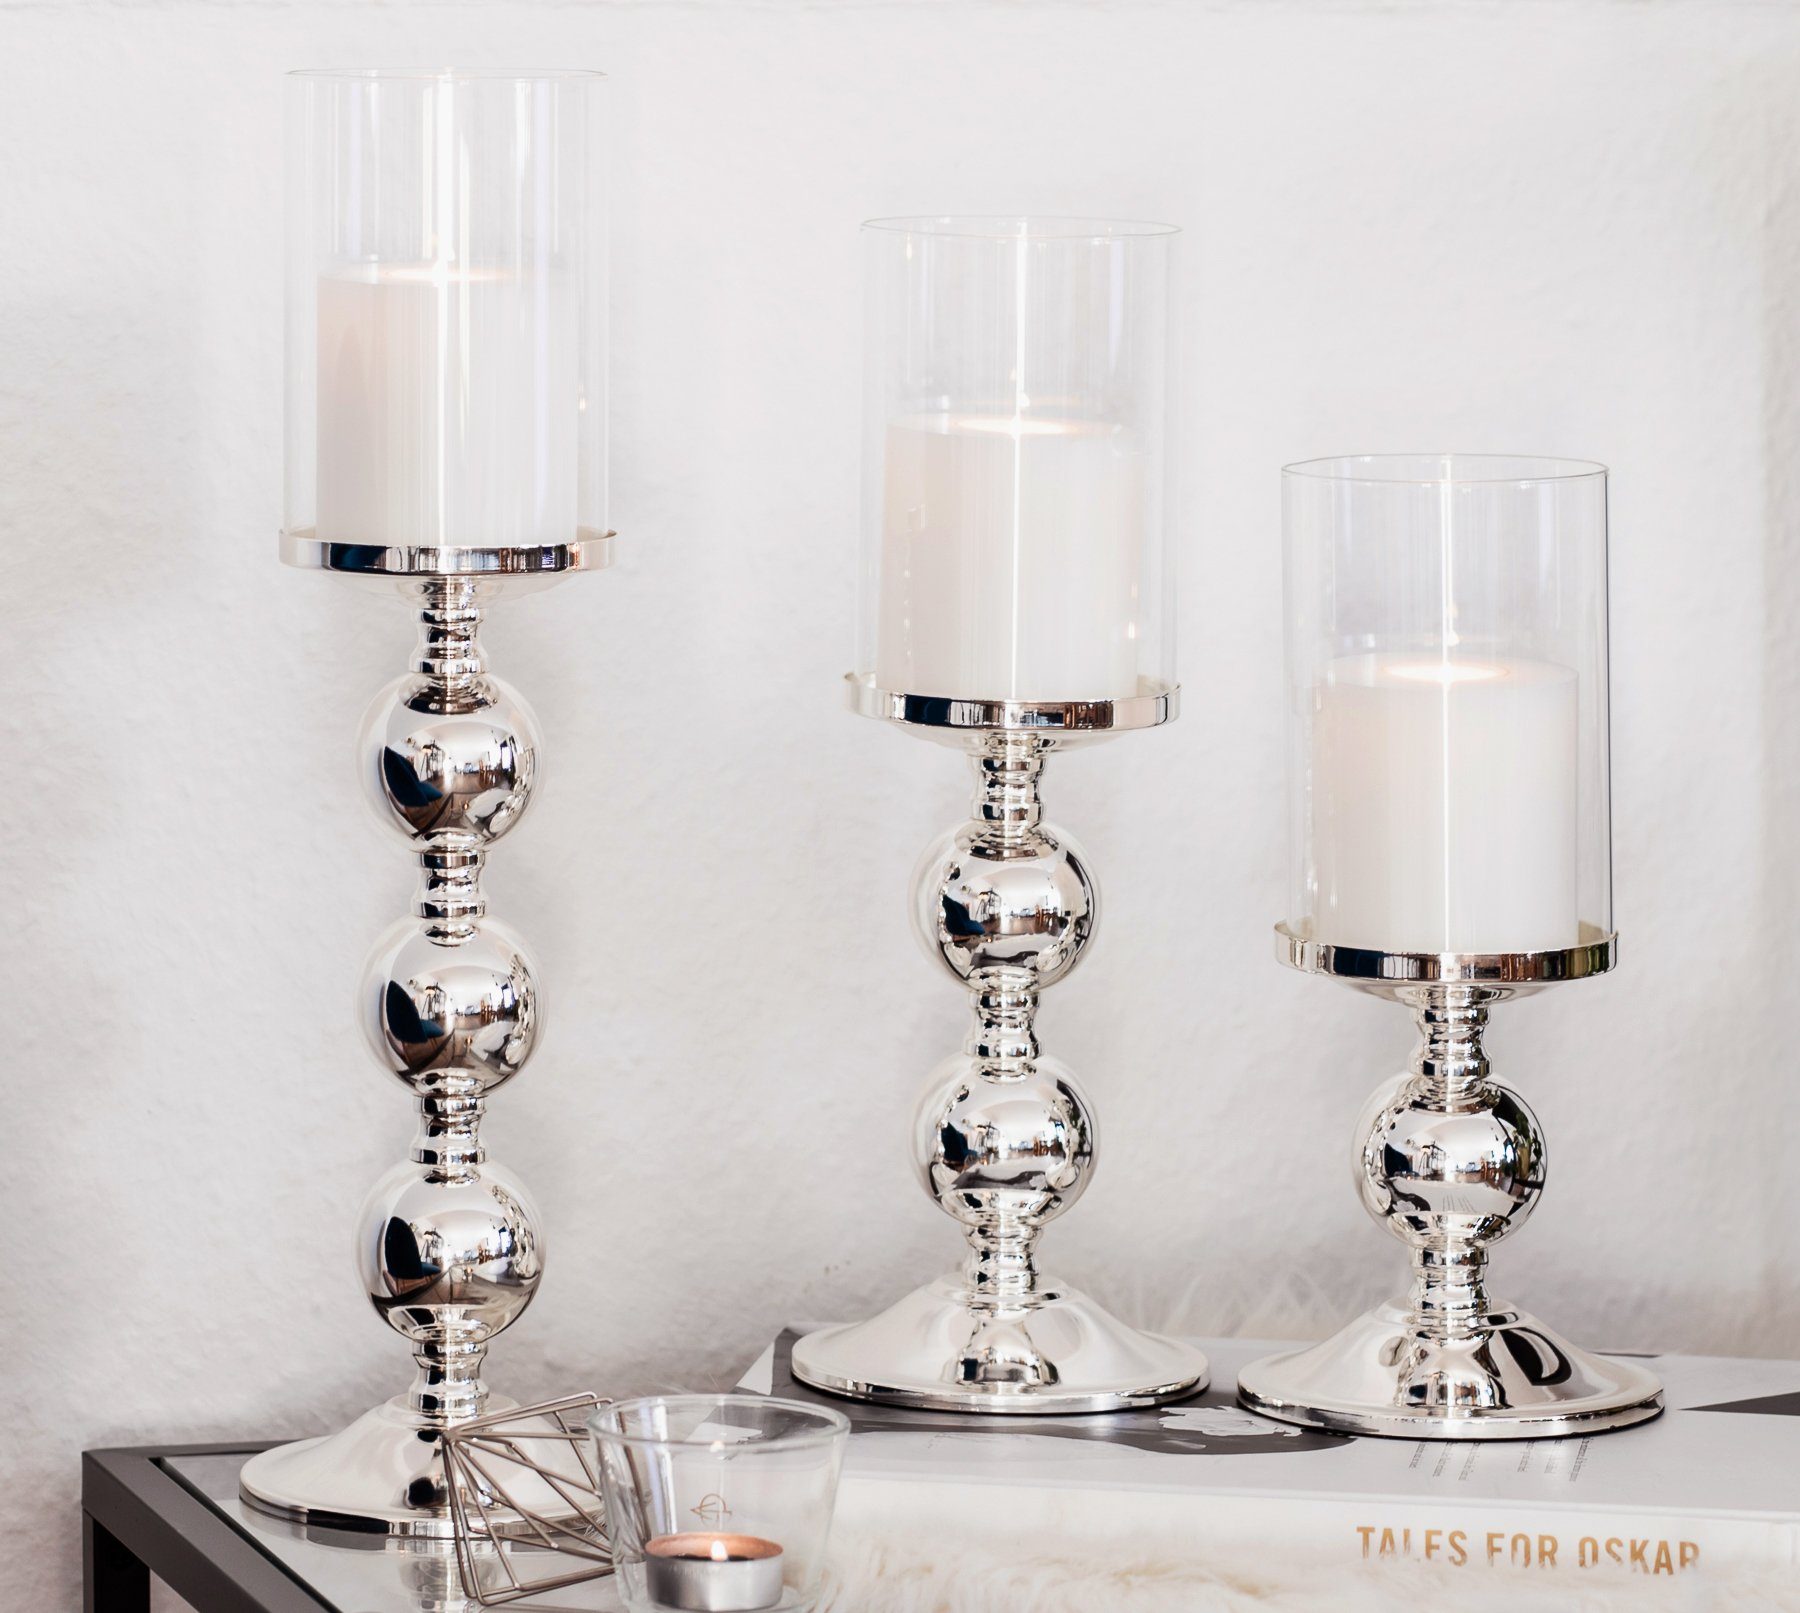 EDZARD Kerzenständer Bamboo, Kerzenleuchter für und mit Höhe Kerzenhalter und versilbert Stumpenkerzen, cm anlaufgeschützt, Glas-Aufsatz 28,5 Silber-Optik